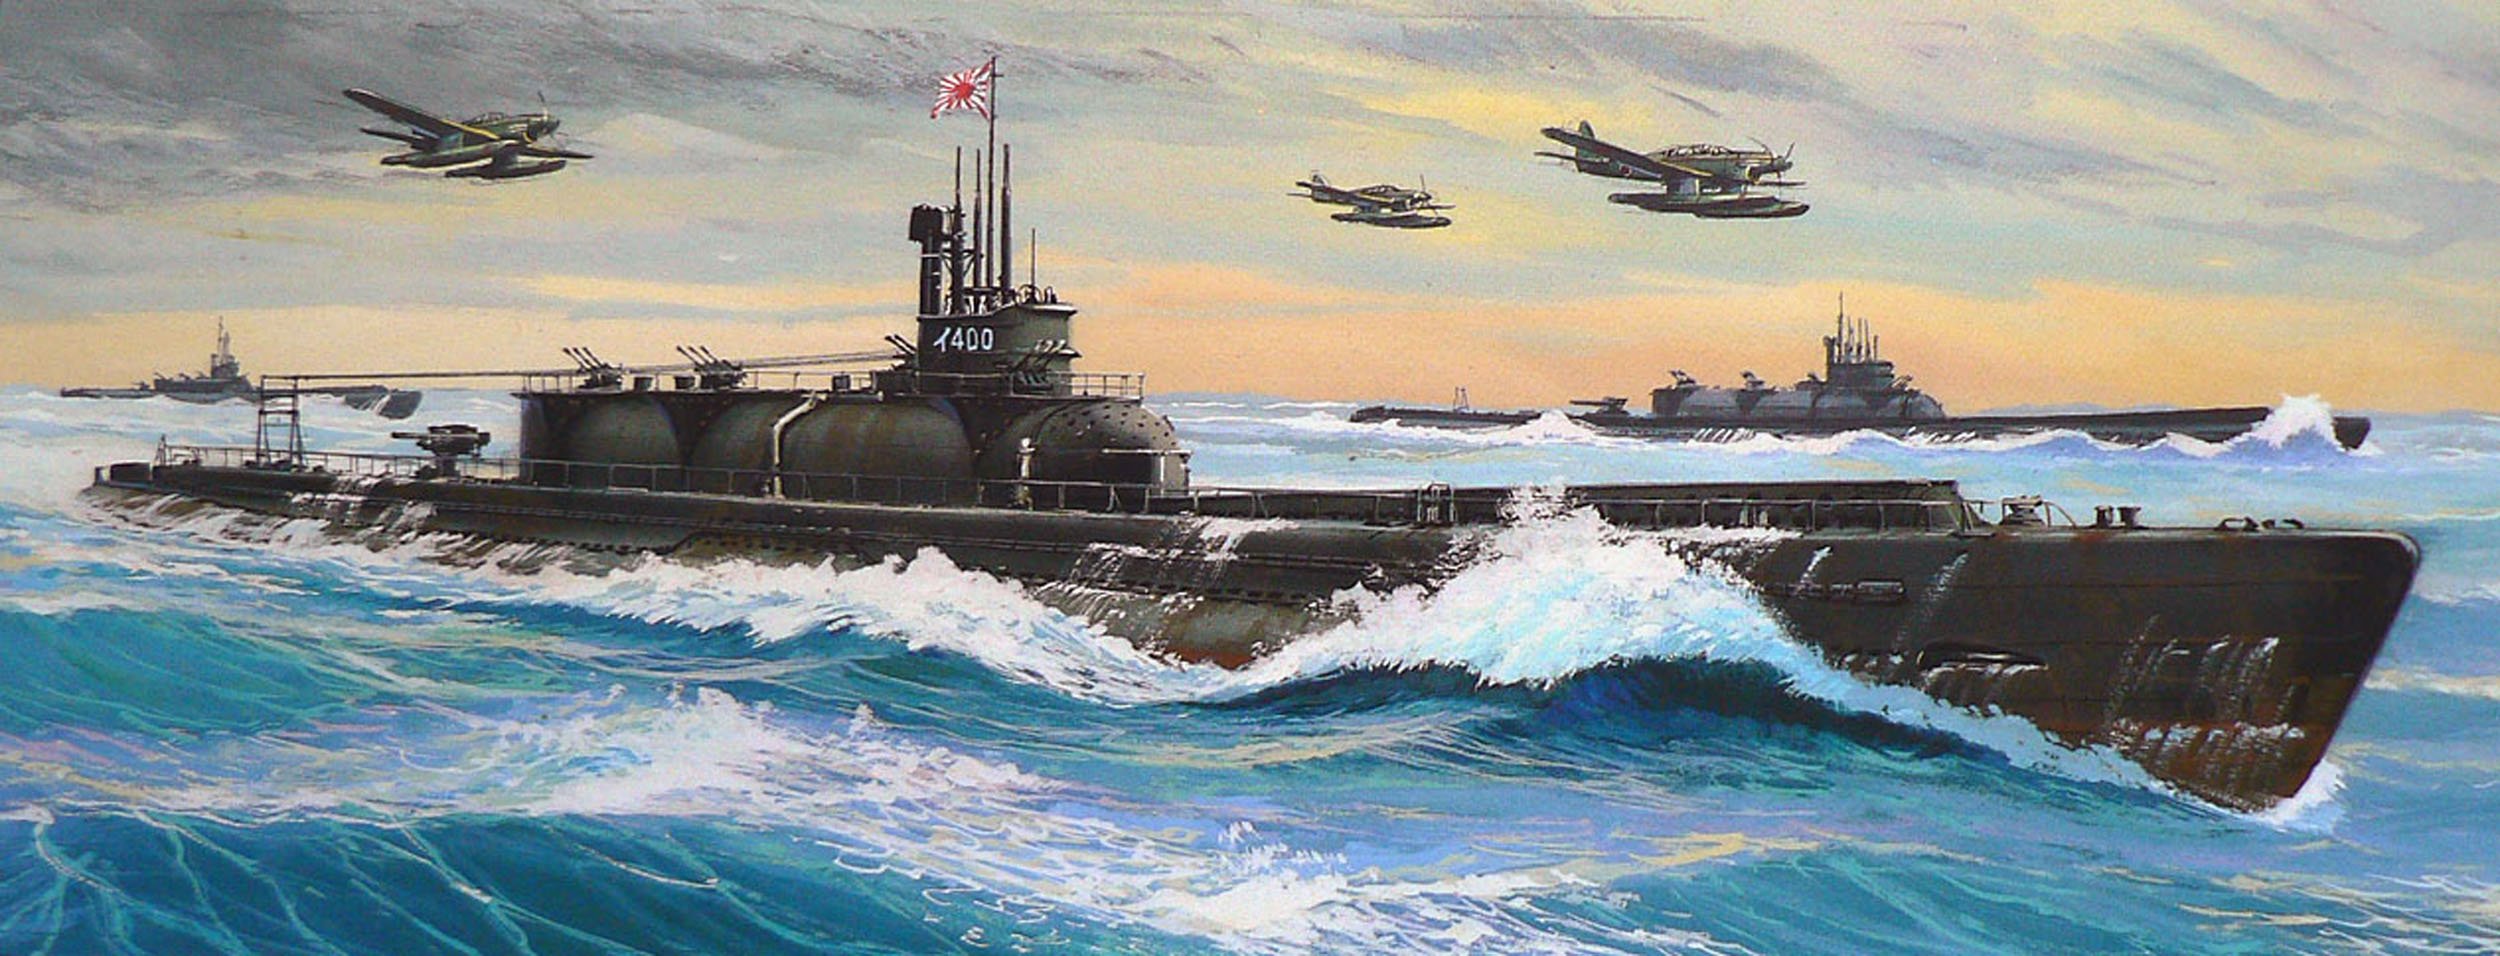 Мировой подводный флот. Подводная лодка i-400 Тип «Сентоку». Японская подлодка i-400. Японские подлодки 2 мировой войны. I-400 подводный авианосец.